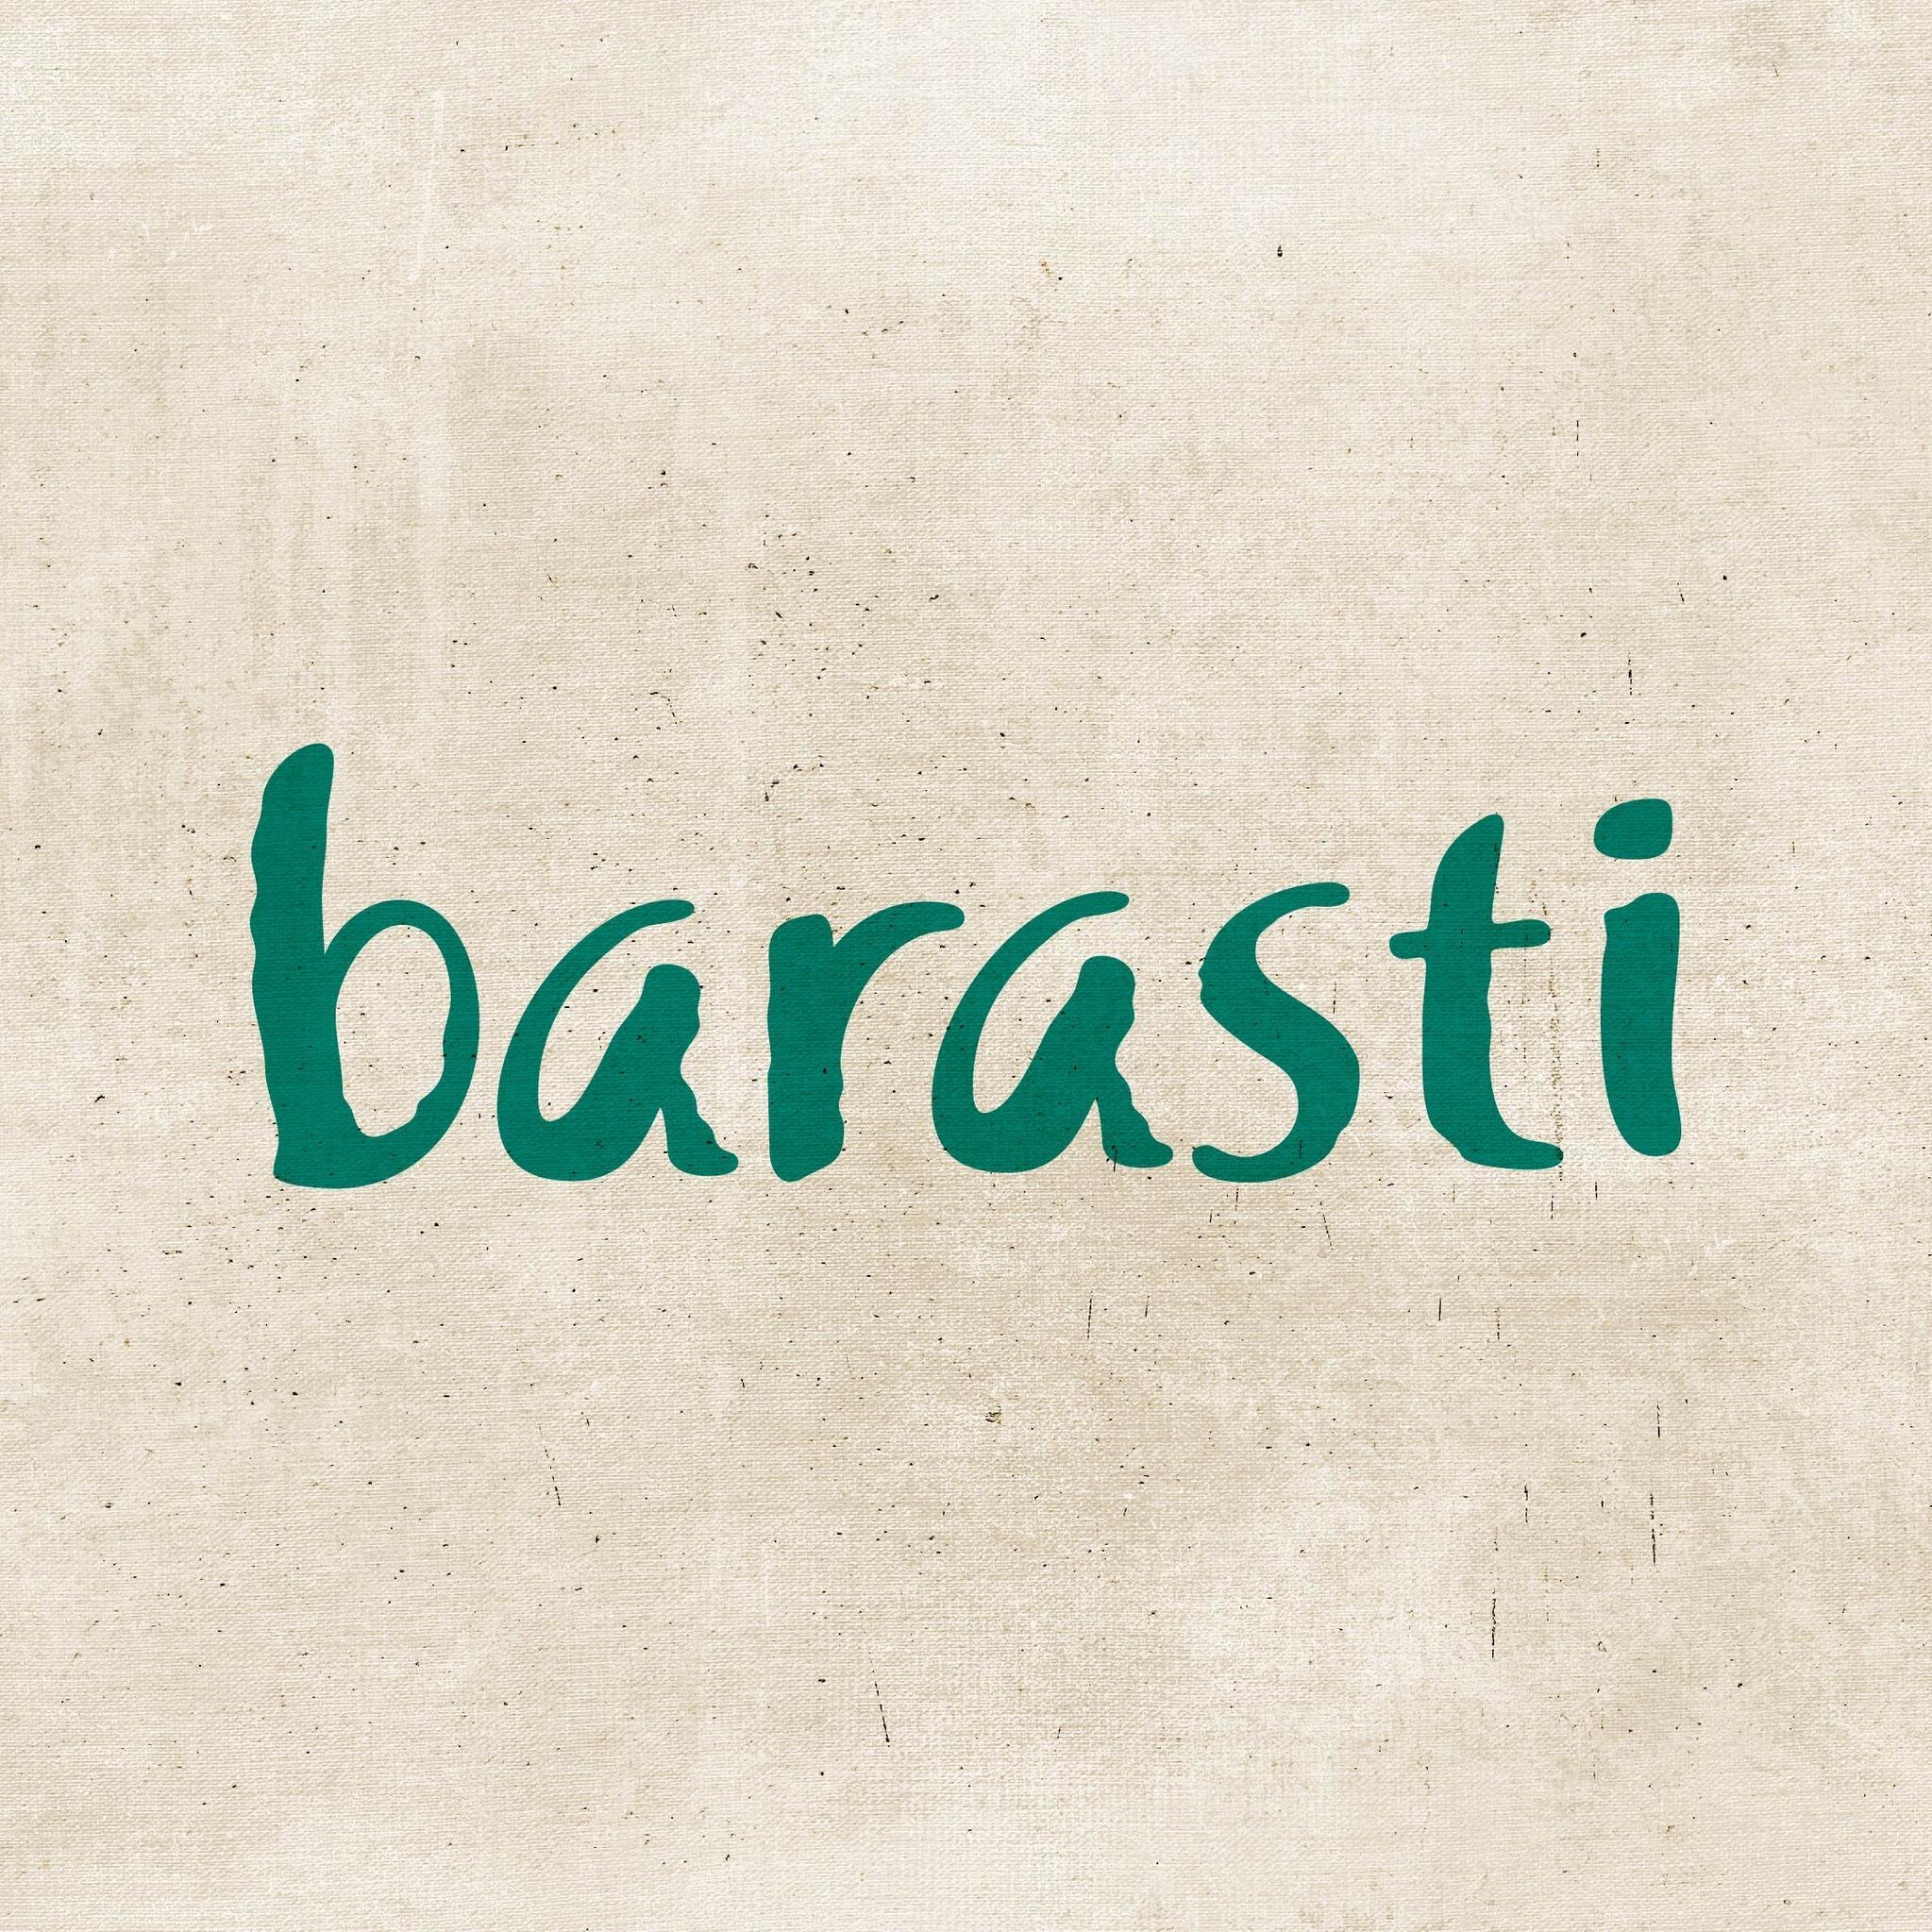 Barasti – Slippery When Wet